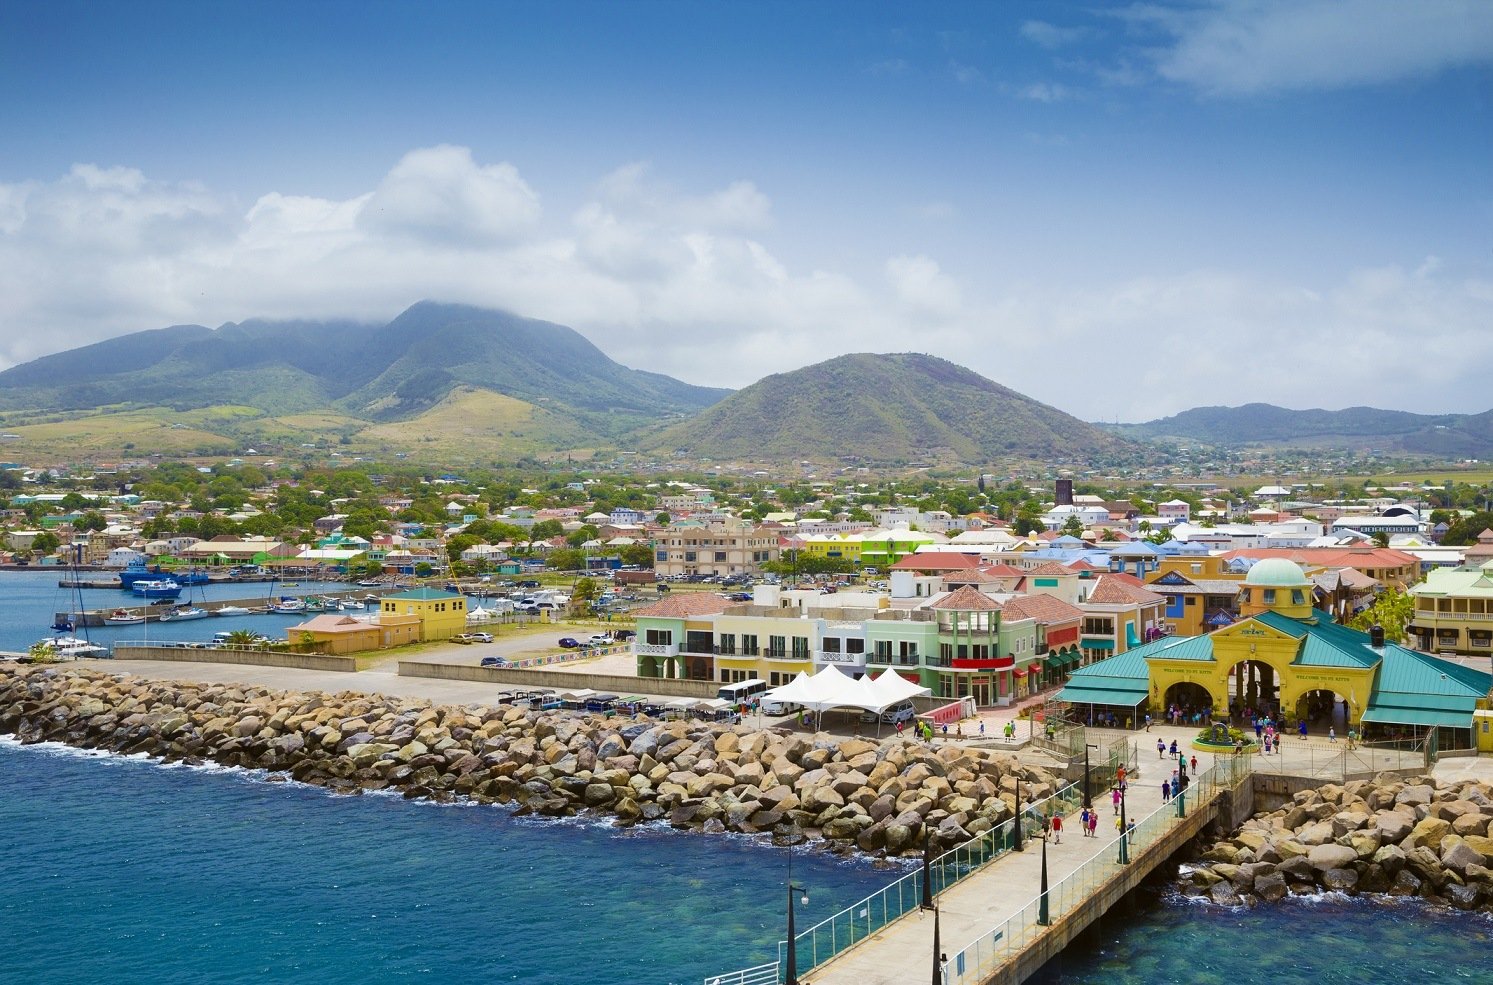 St. Kitts Nevis